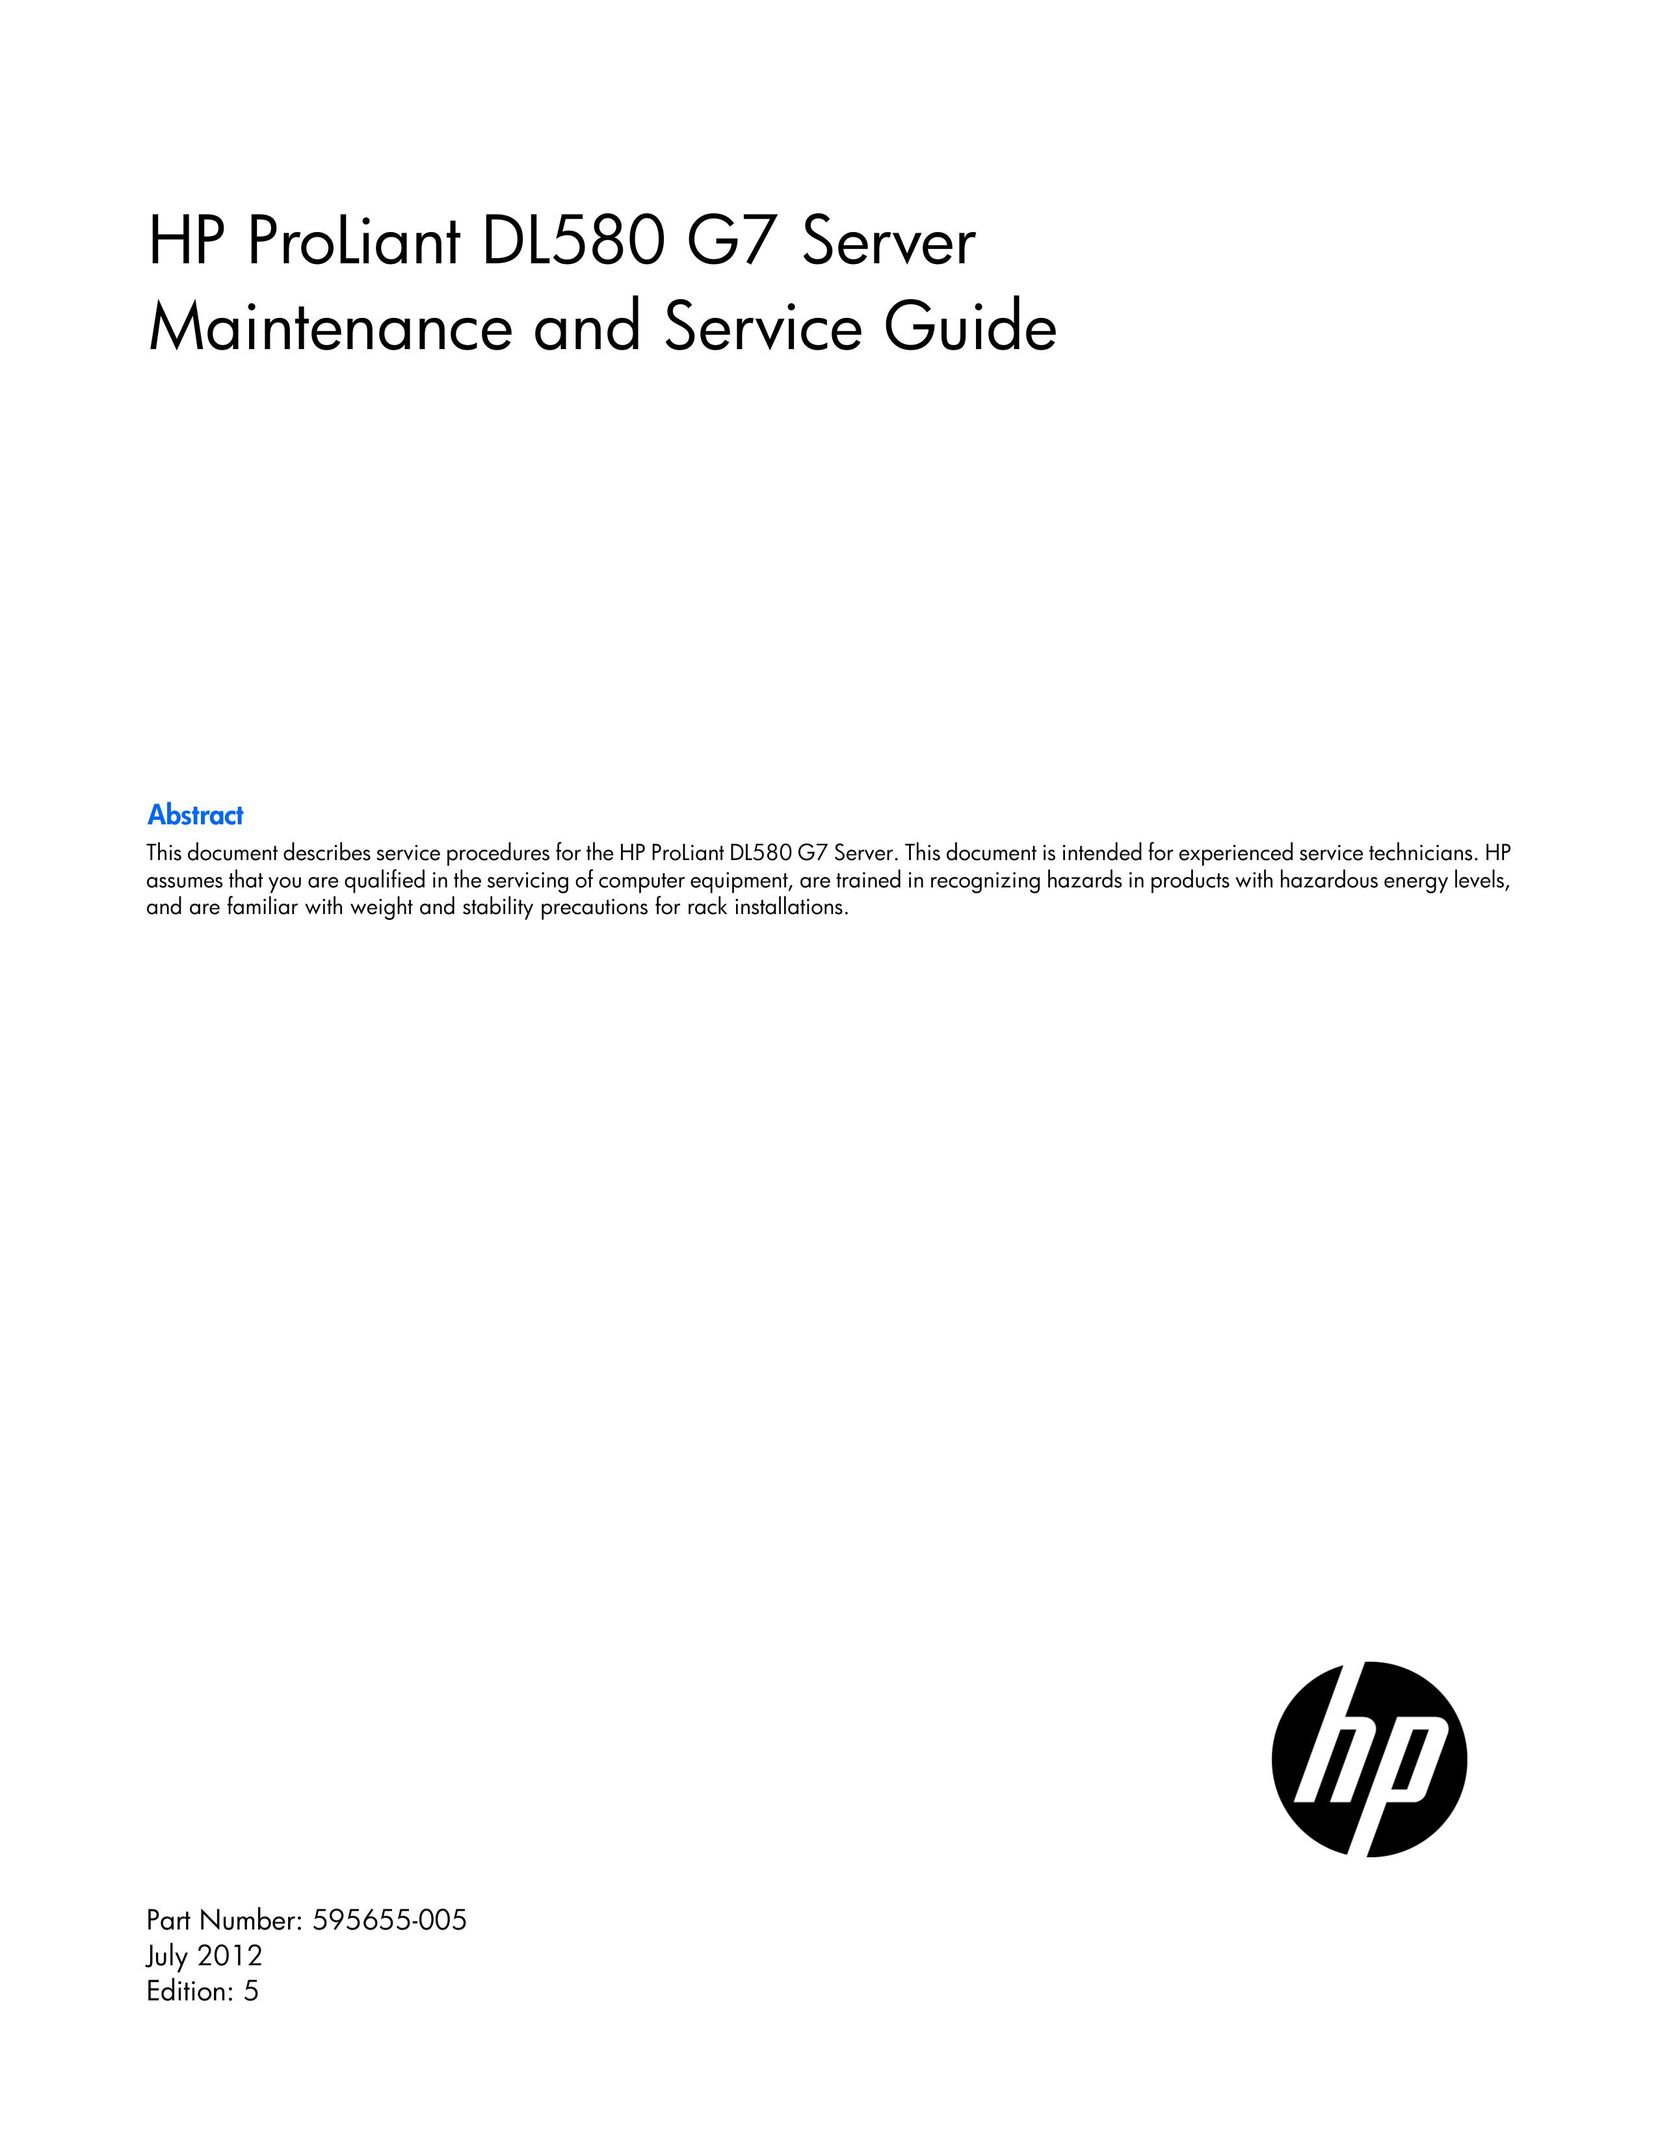 HP (Hewlett-Packard) 643064-001 Server User Manual